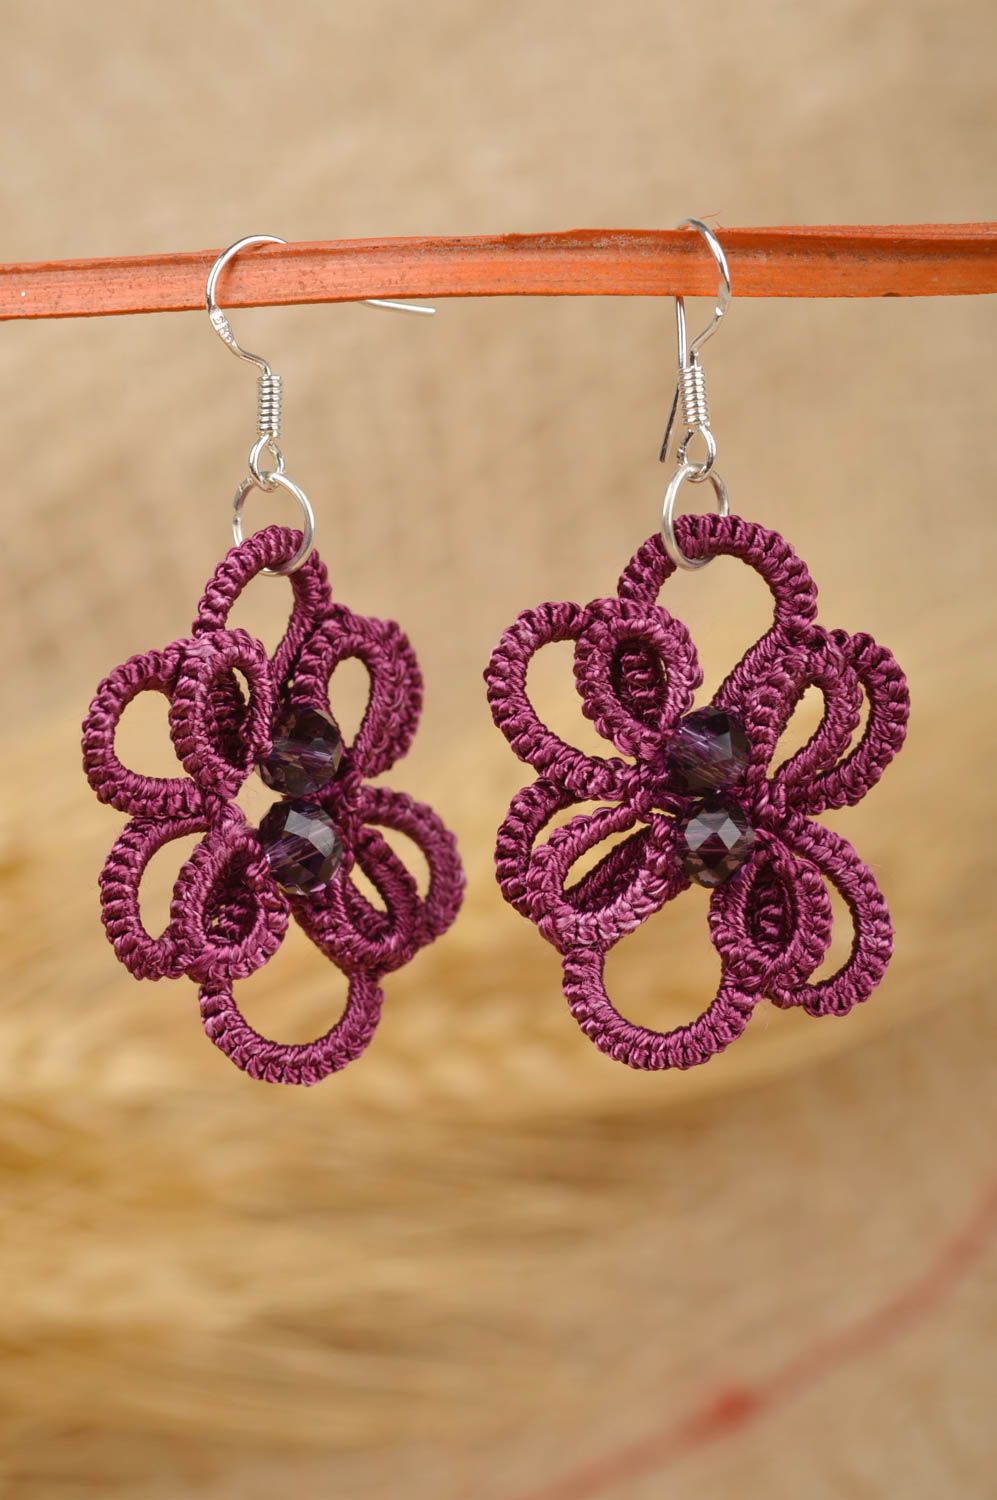 Handmade woven earrings tatting earrings designer accessories for women photo 1